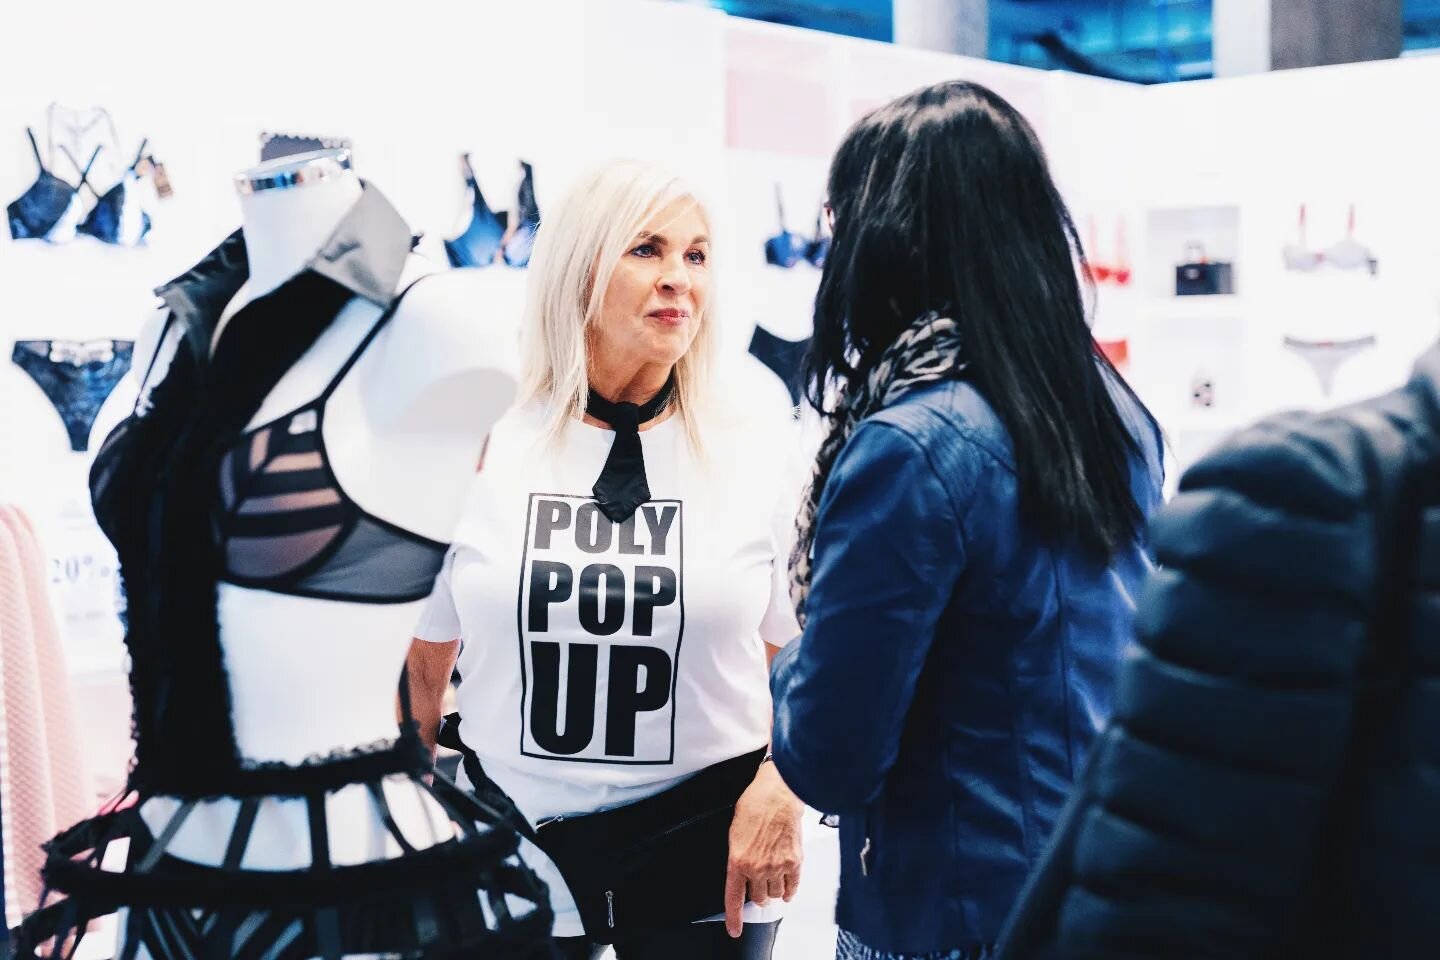 . POLY POP UP .
.
.
.
#popupstore #boutiquecarreblanc #polystyrene #conceptstore #retail #marketingcampaign #lingerie #unique